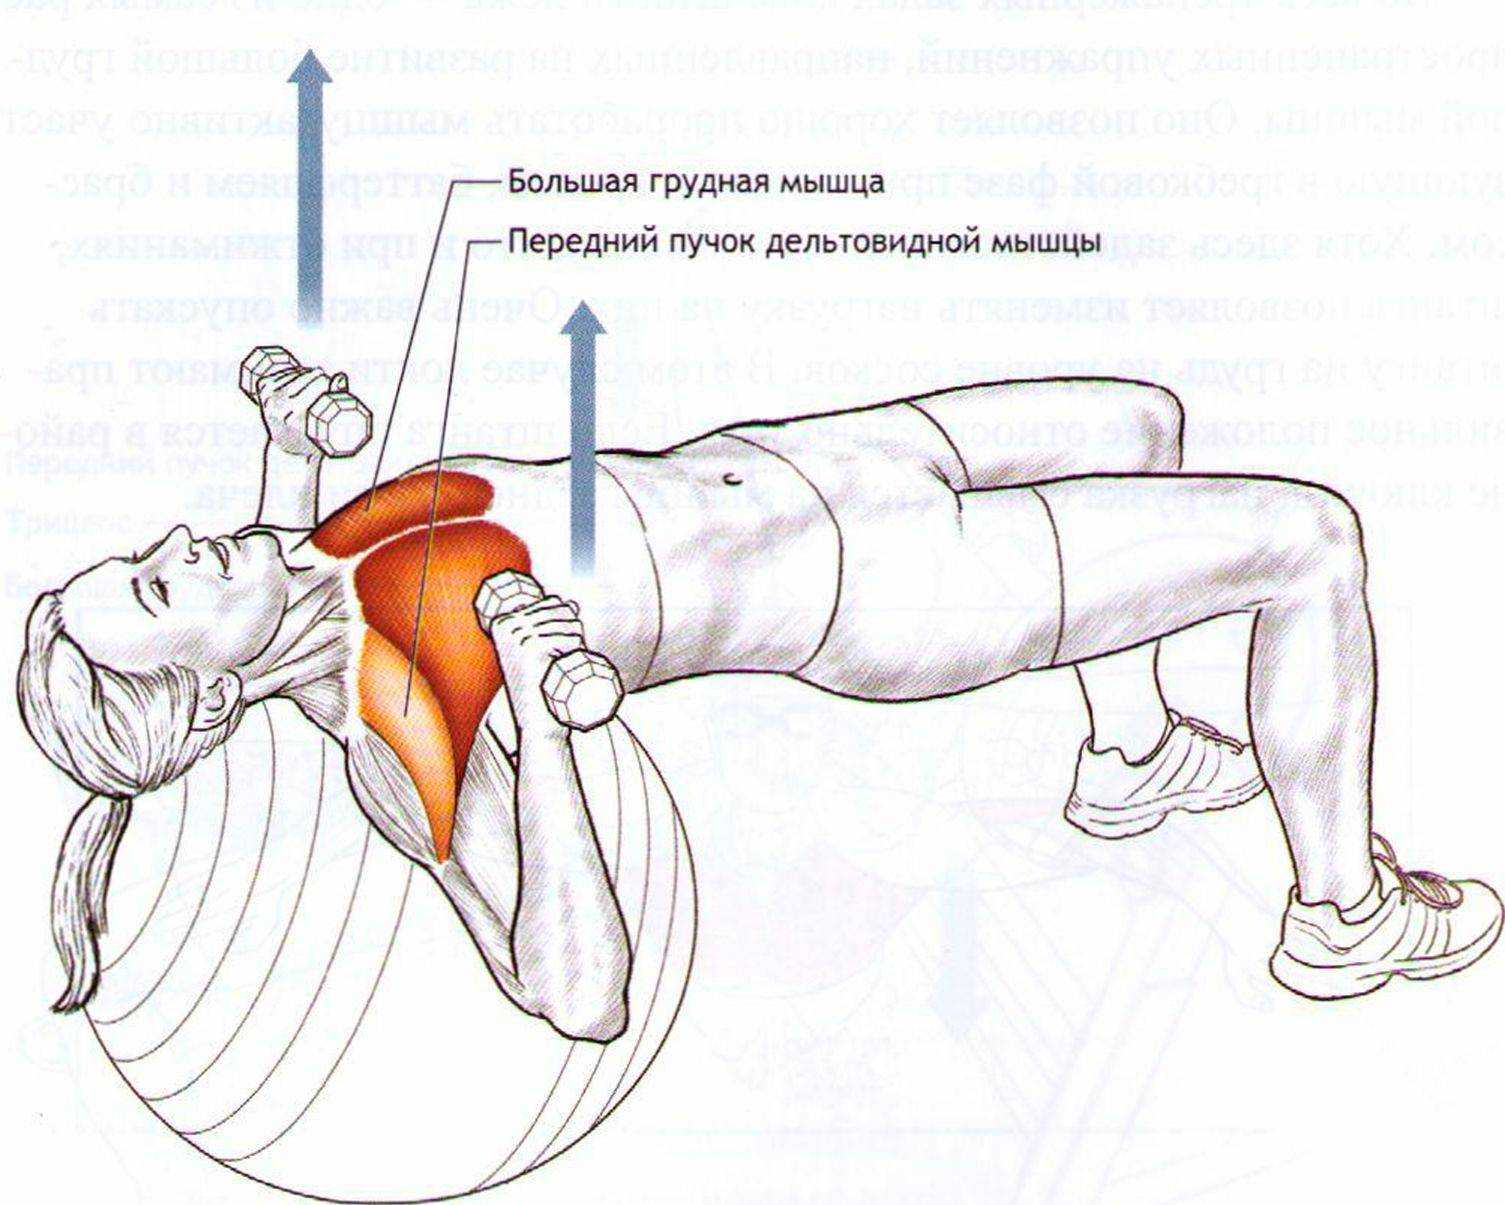 Упражнения со штангой на грудь: базовые основы, правила проведения занятия, техника выполнения и составление программы тренировки - tony.ru